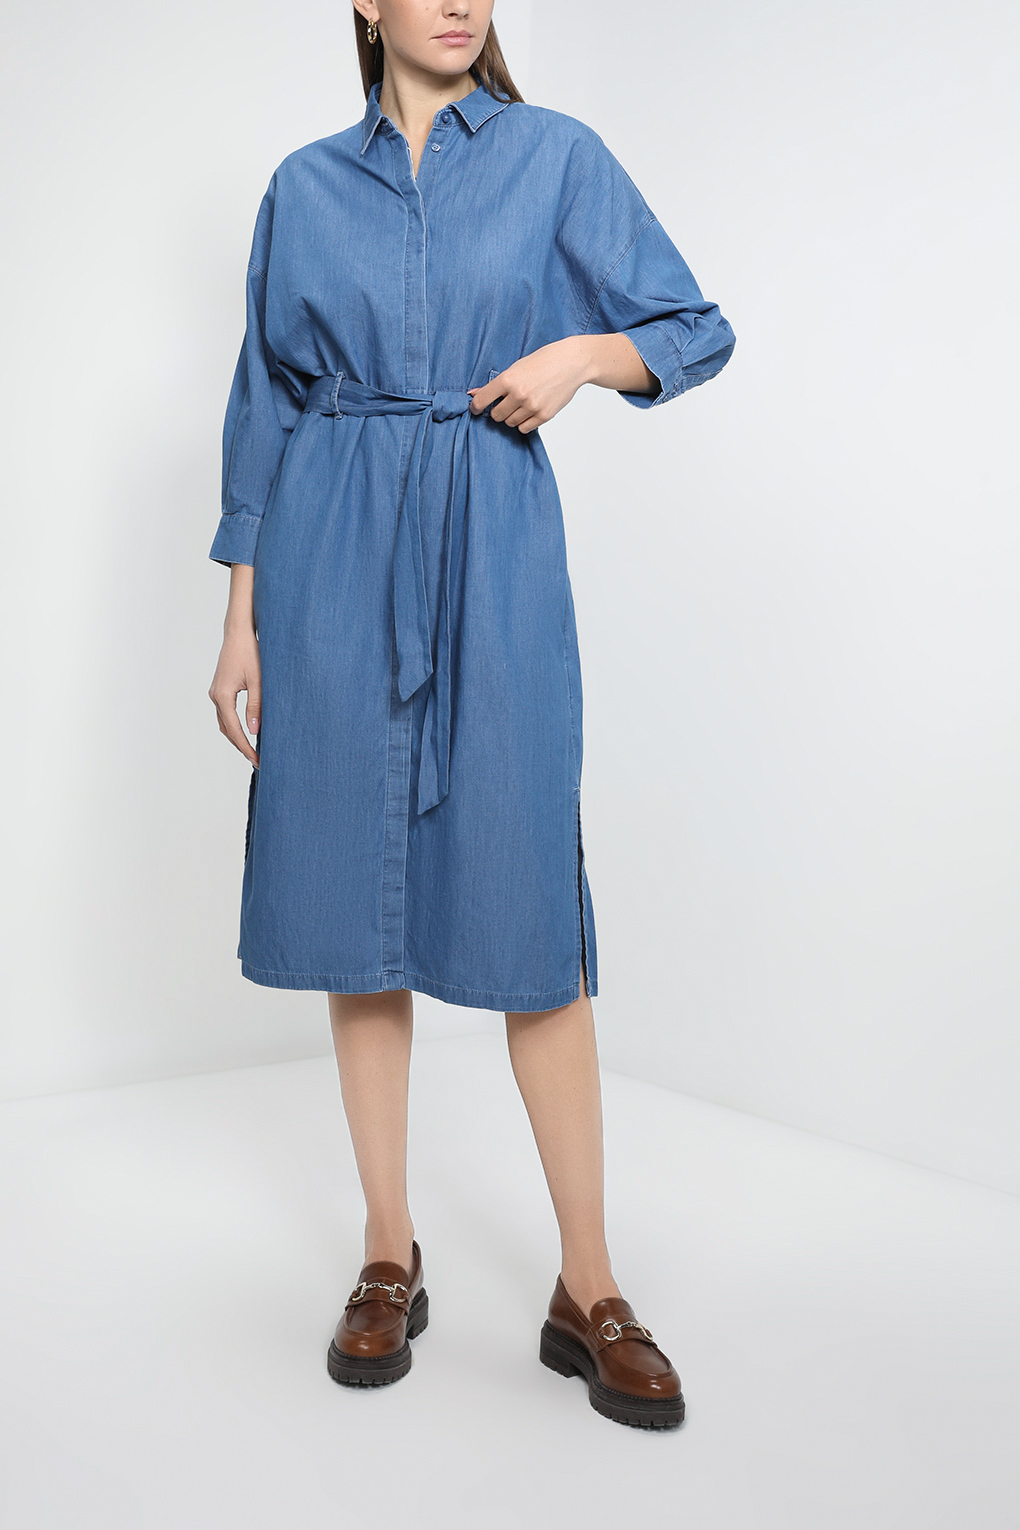 Платье женское Esprit Collection 013EO1E307 синее XL